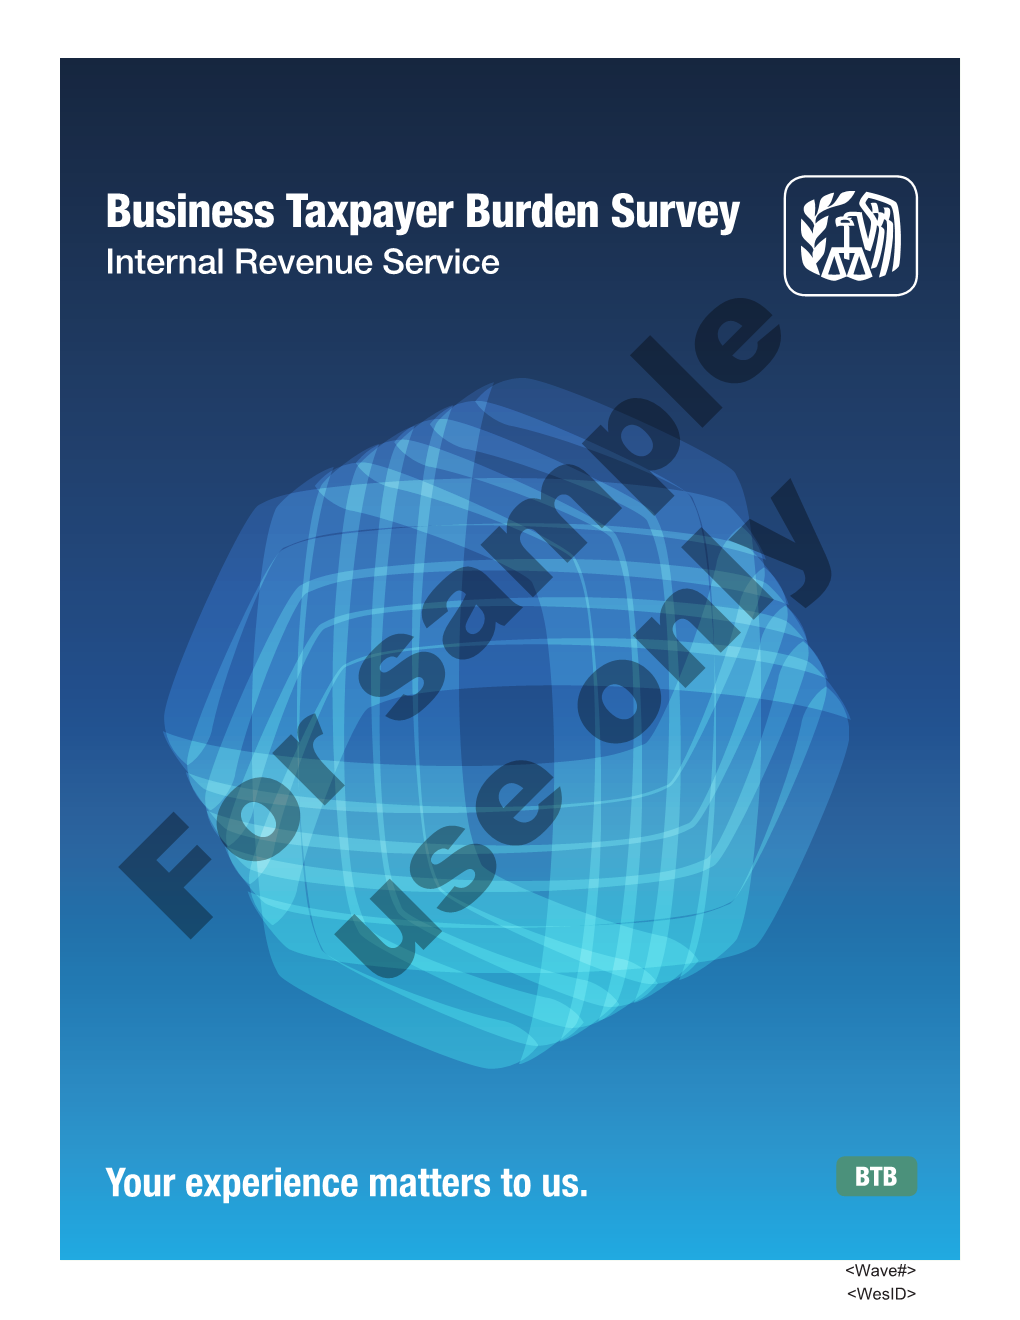 Business Taxpayer Burden Survey Internal Revenue Service